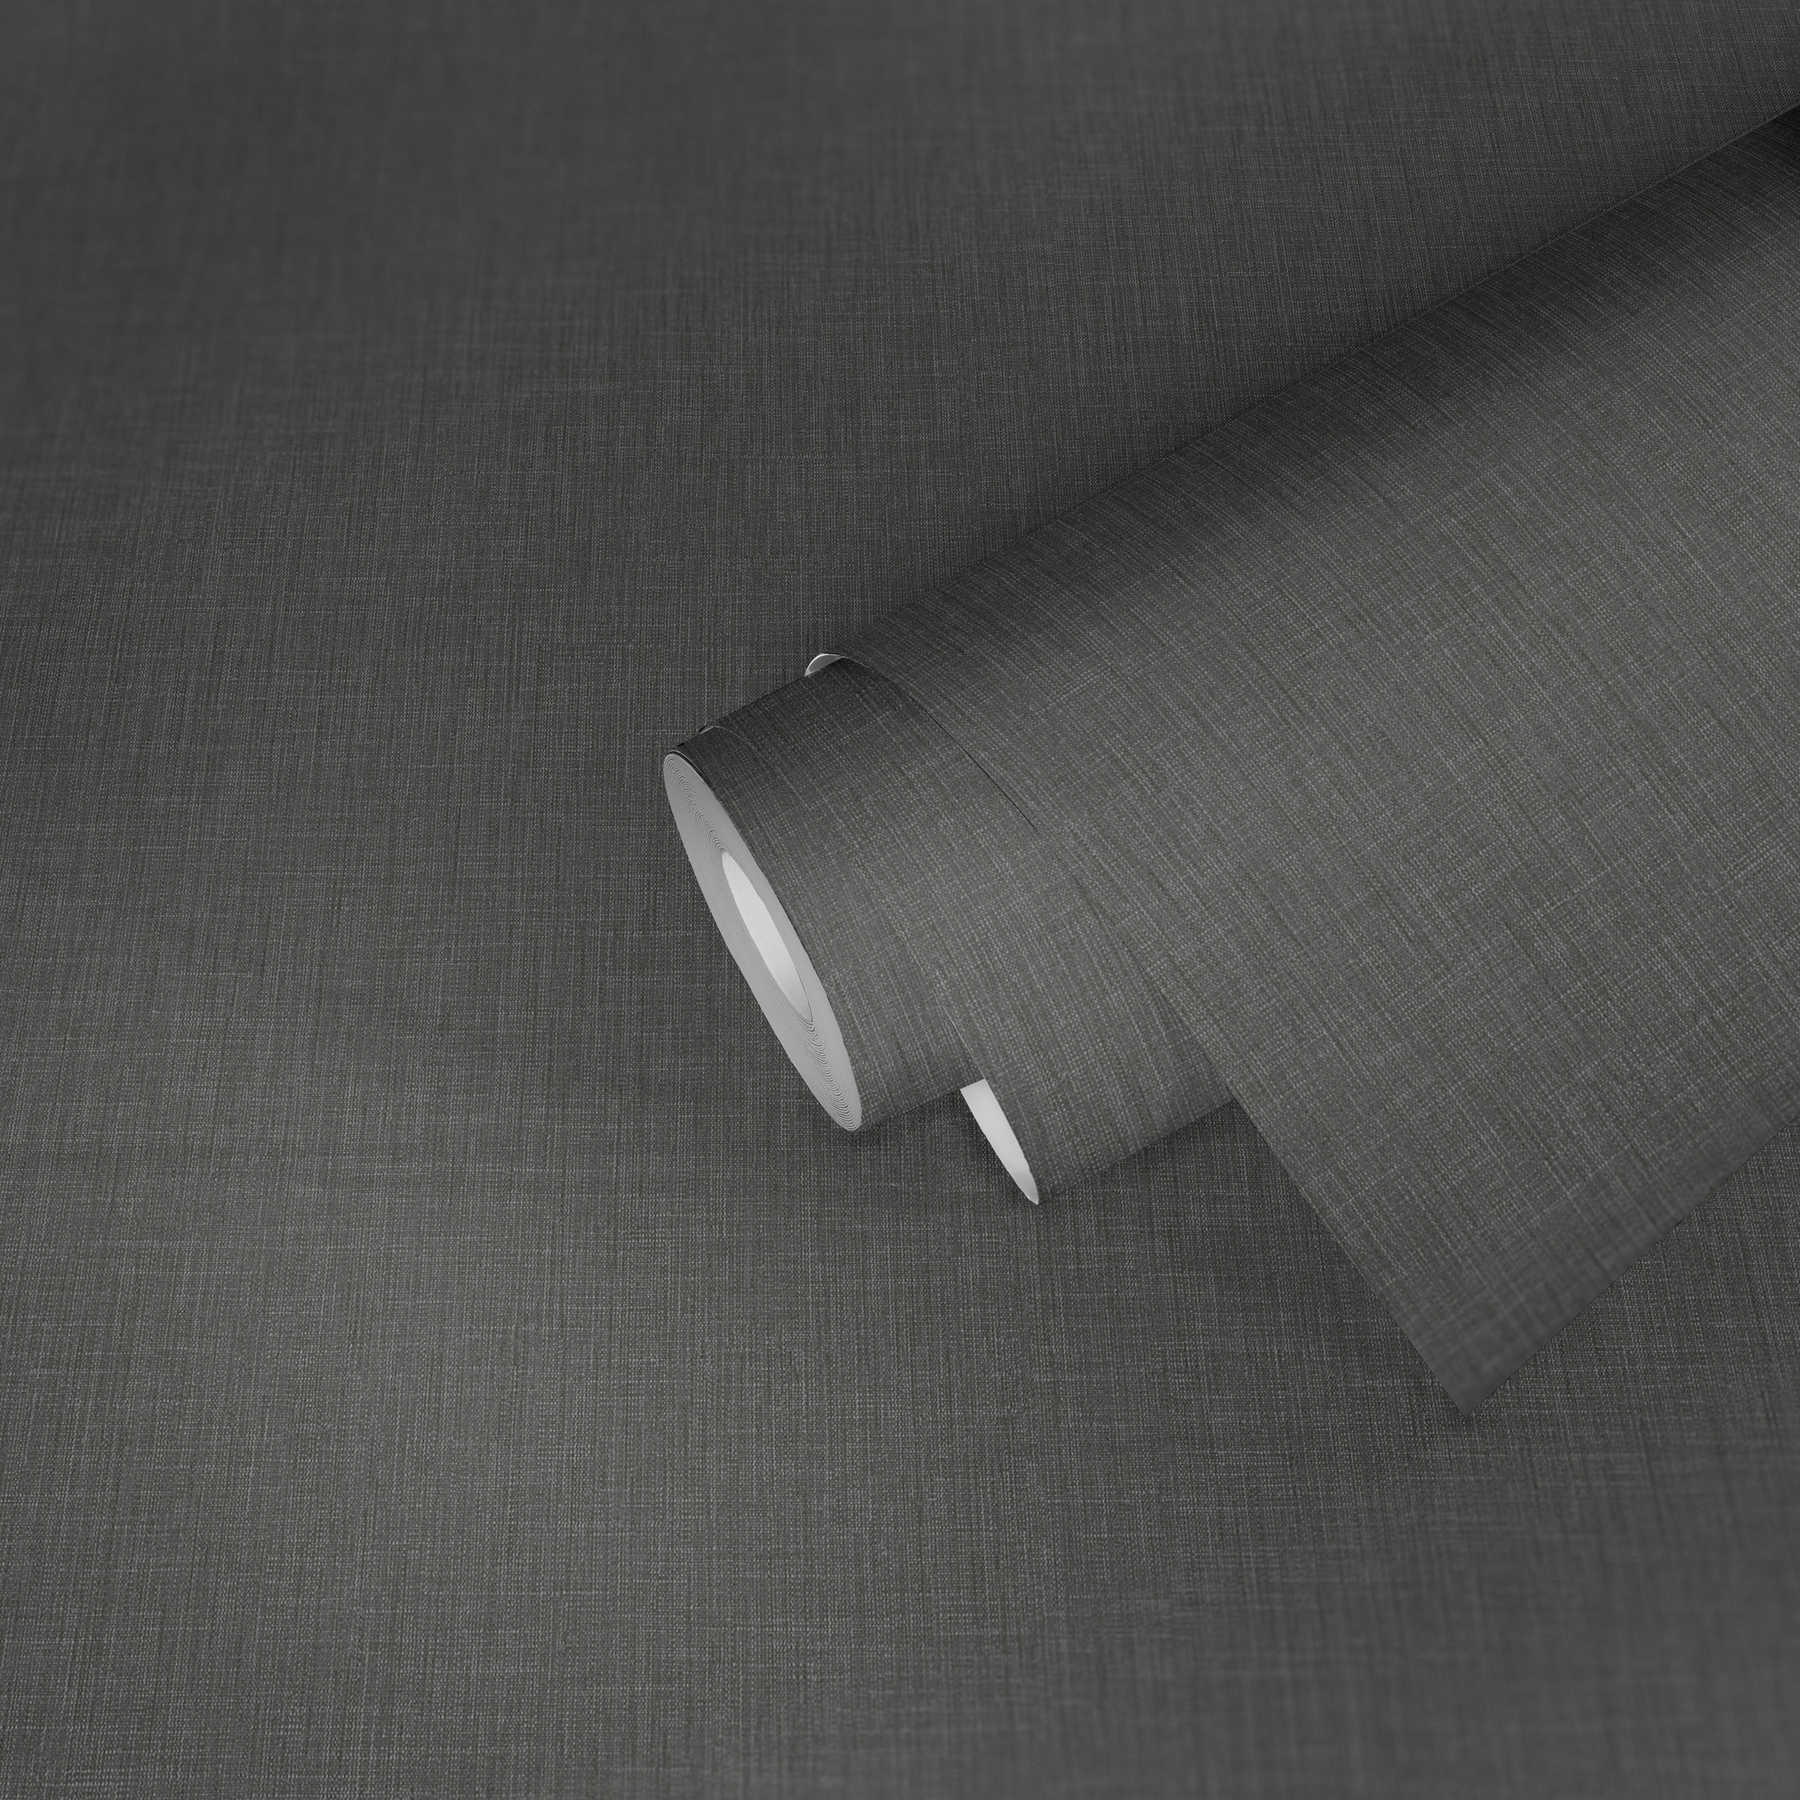             Carta da parati grigio screziato con disegno tessile in stile bouclé
        